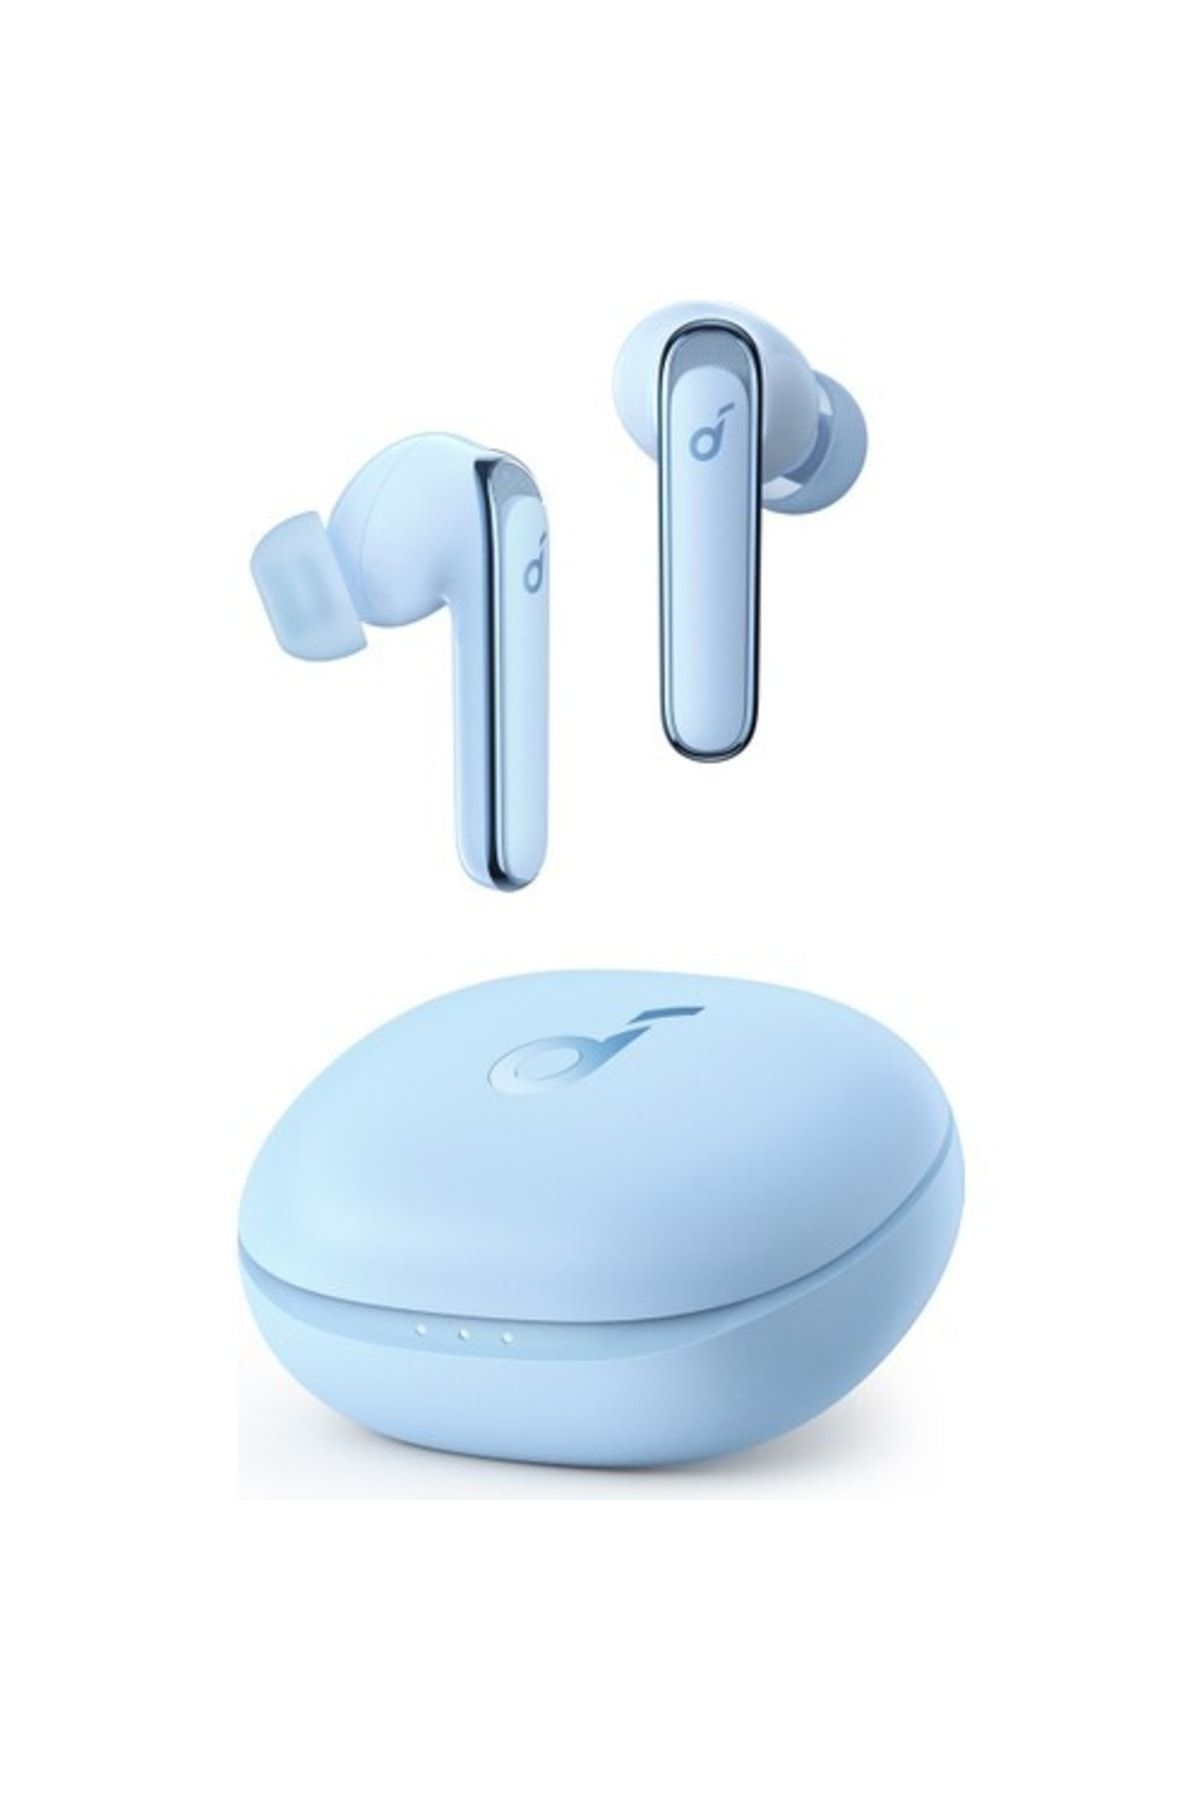 Anker Soundcore Life P3 Tws Bluetooth 5.2 Kulaklık - Oyun Modu - Hibrit Aktif Gürültü Önleme Gökyüzü